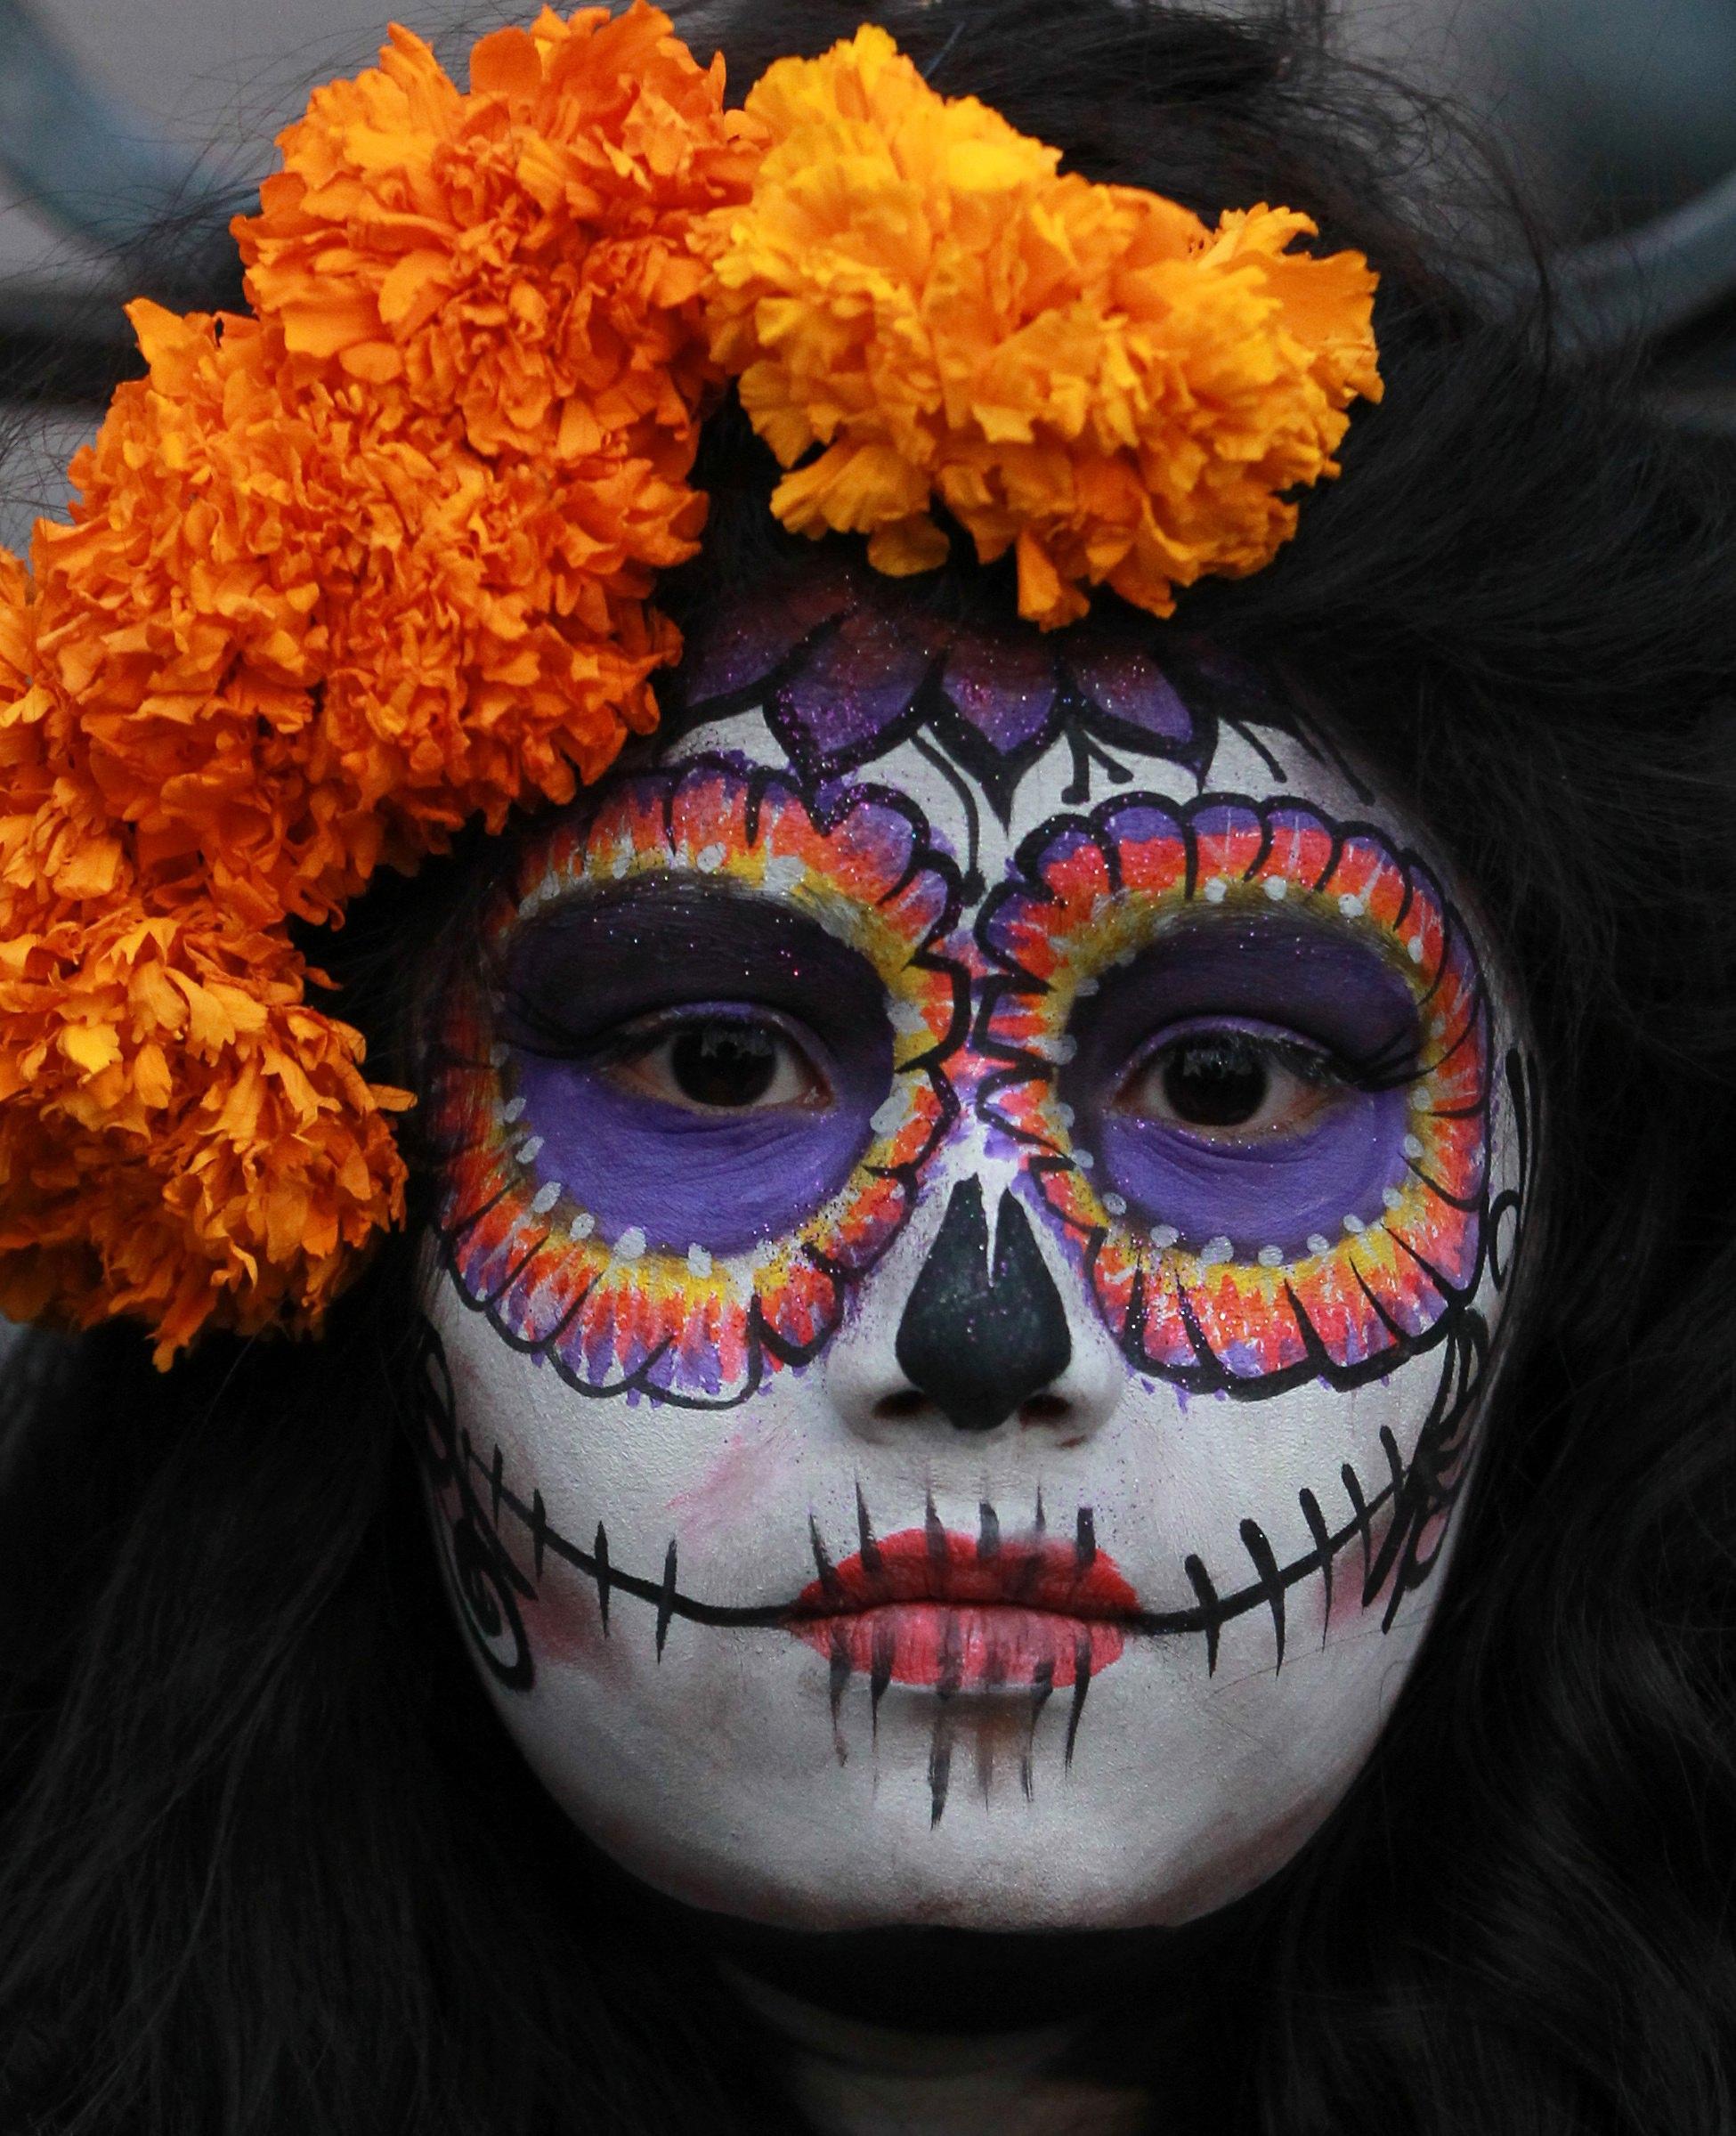 La Calavera Catarina è una maschera della cultura messicana risalente ai primi anni del 1900